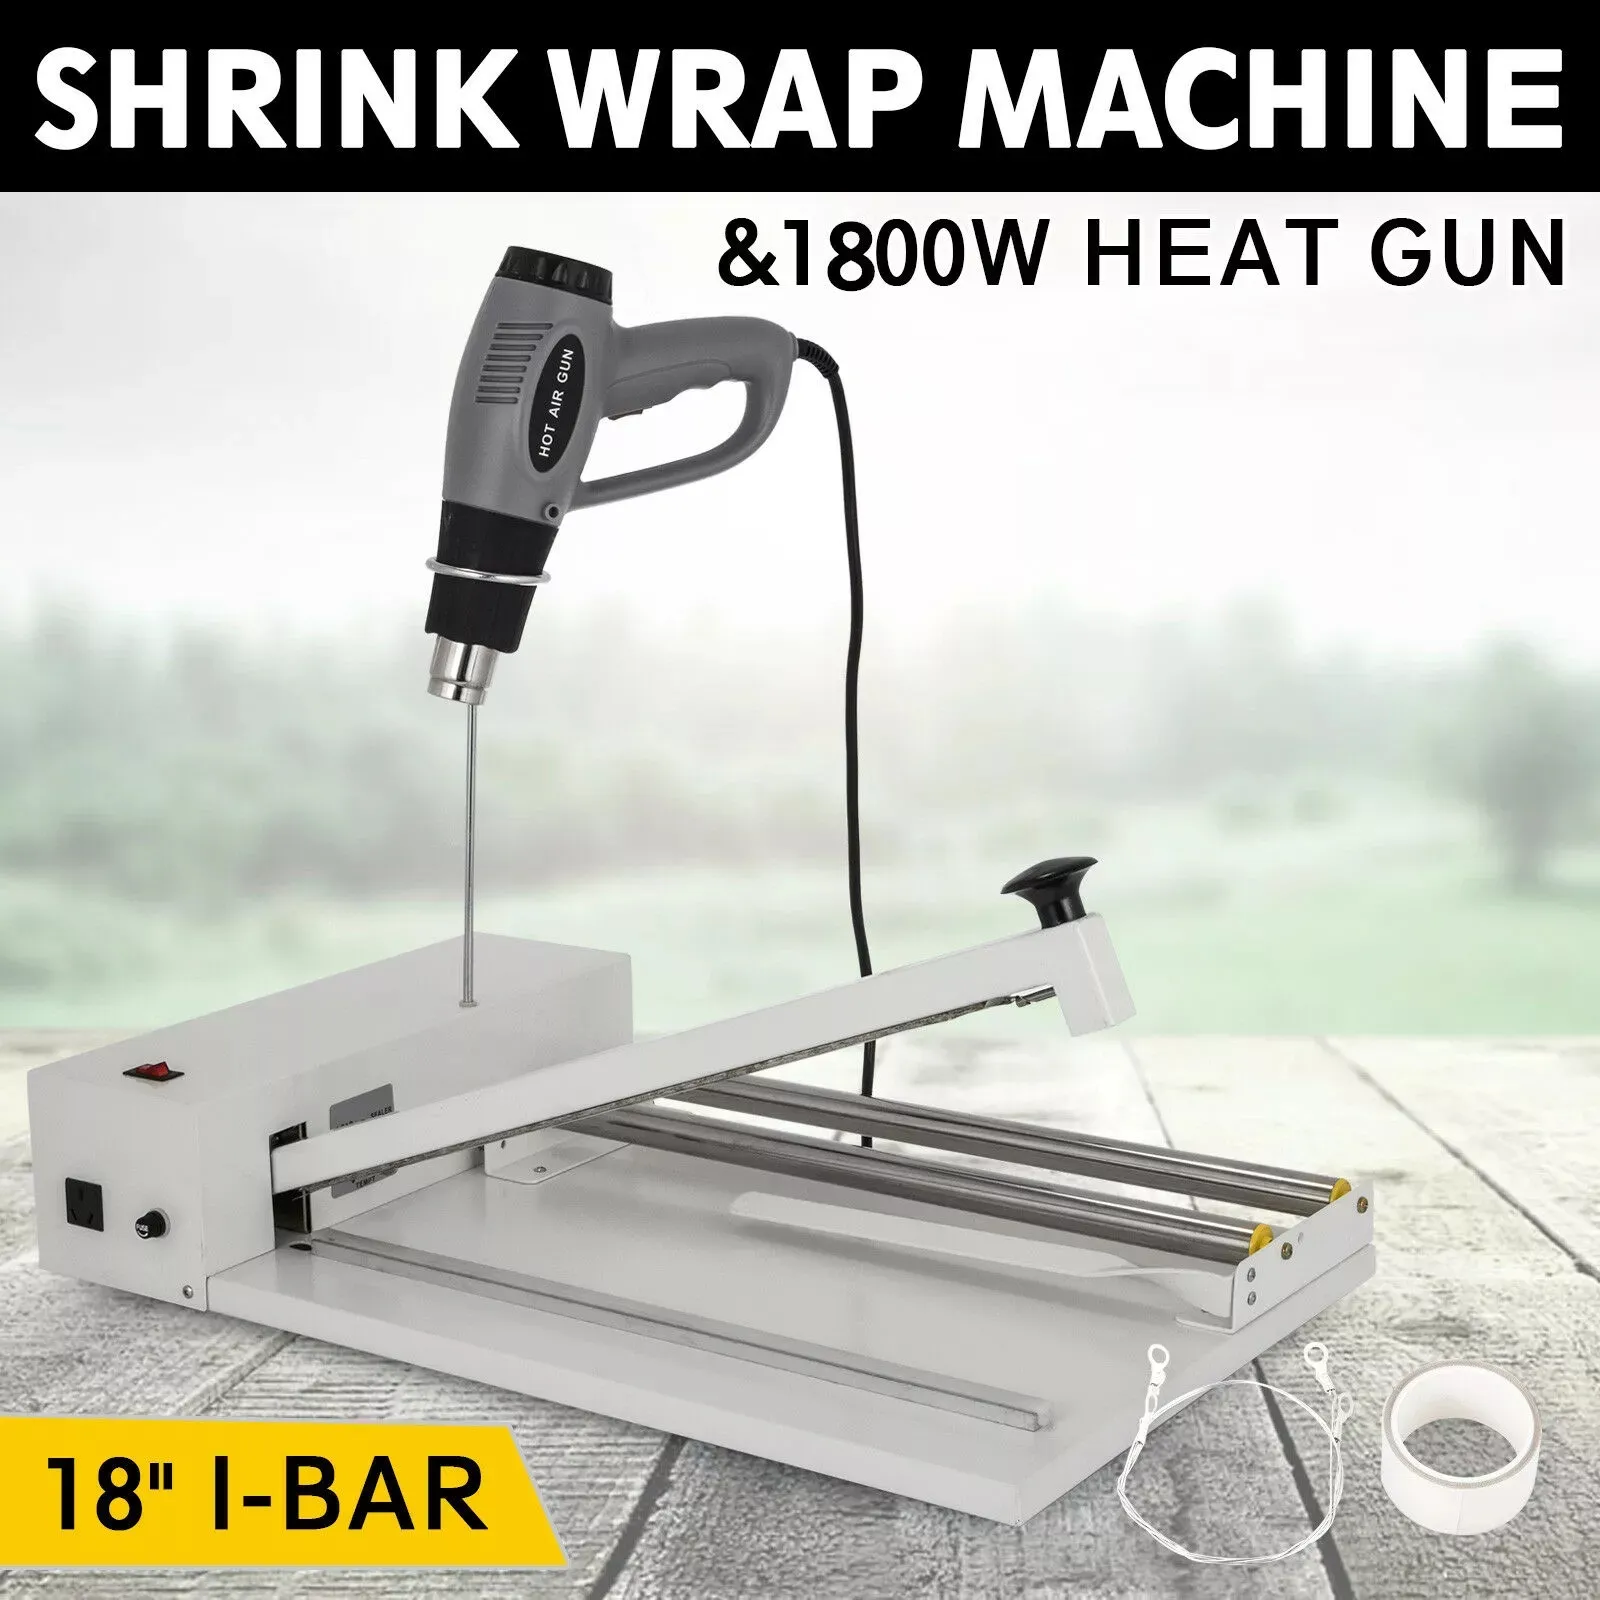 Con recubrimiento en polvo 18inch duradera I-Bar Shrink Wrap máquina de sellado caliente instantánea Sellador Pistola de calor Jabón Alimentos fácil de operar